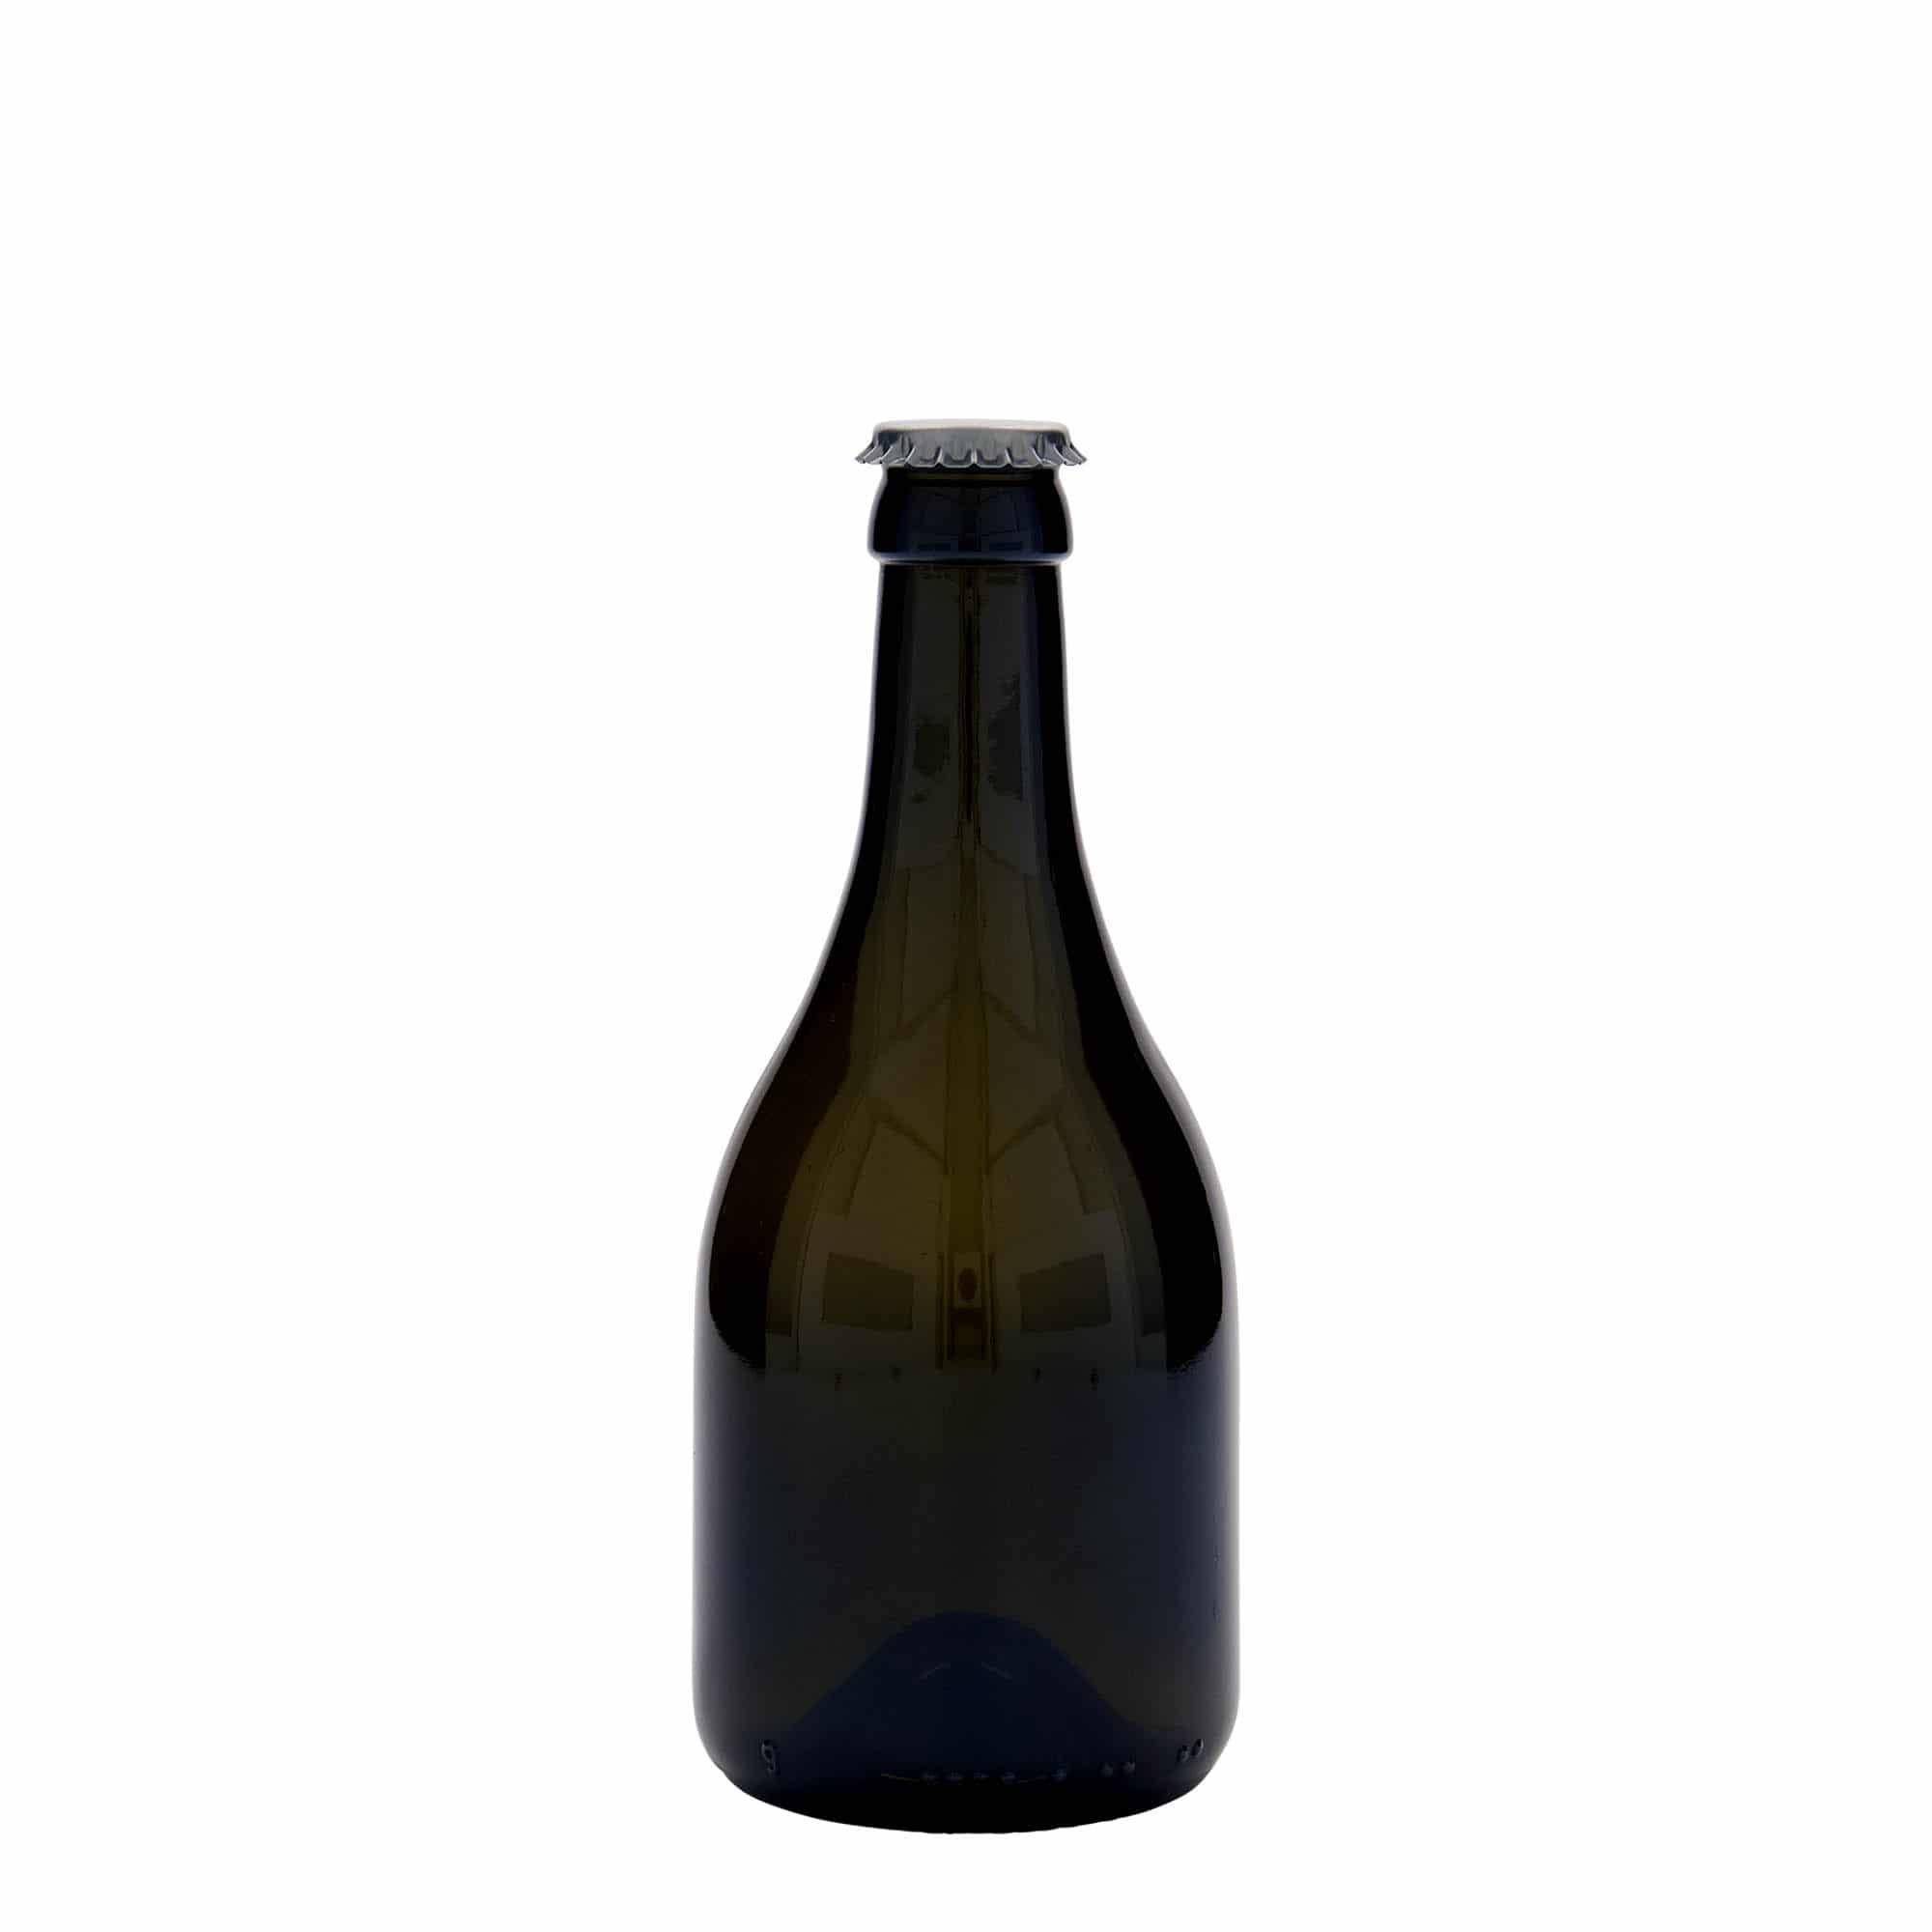 330 ml ølflaske 'Horta', glas, antikgrøn, åbning: Kronekapsel